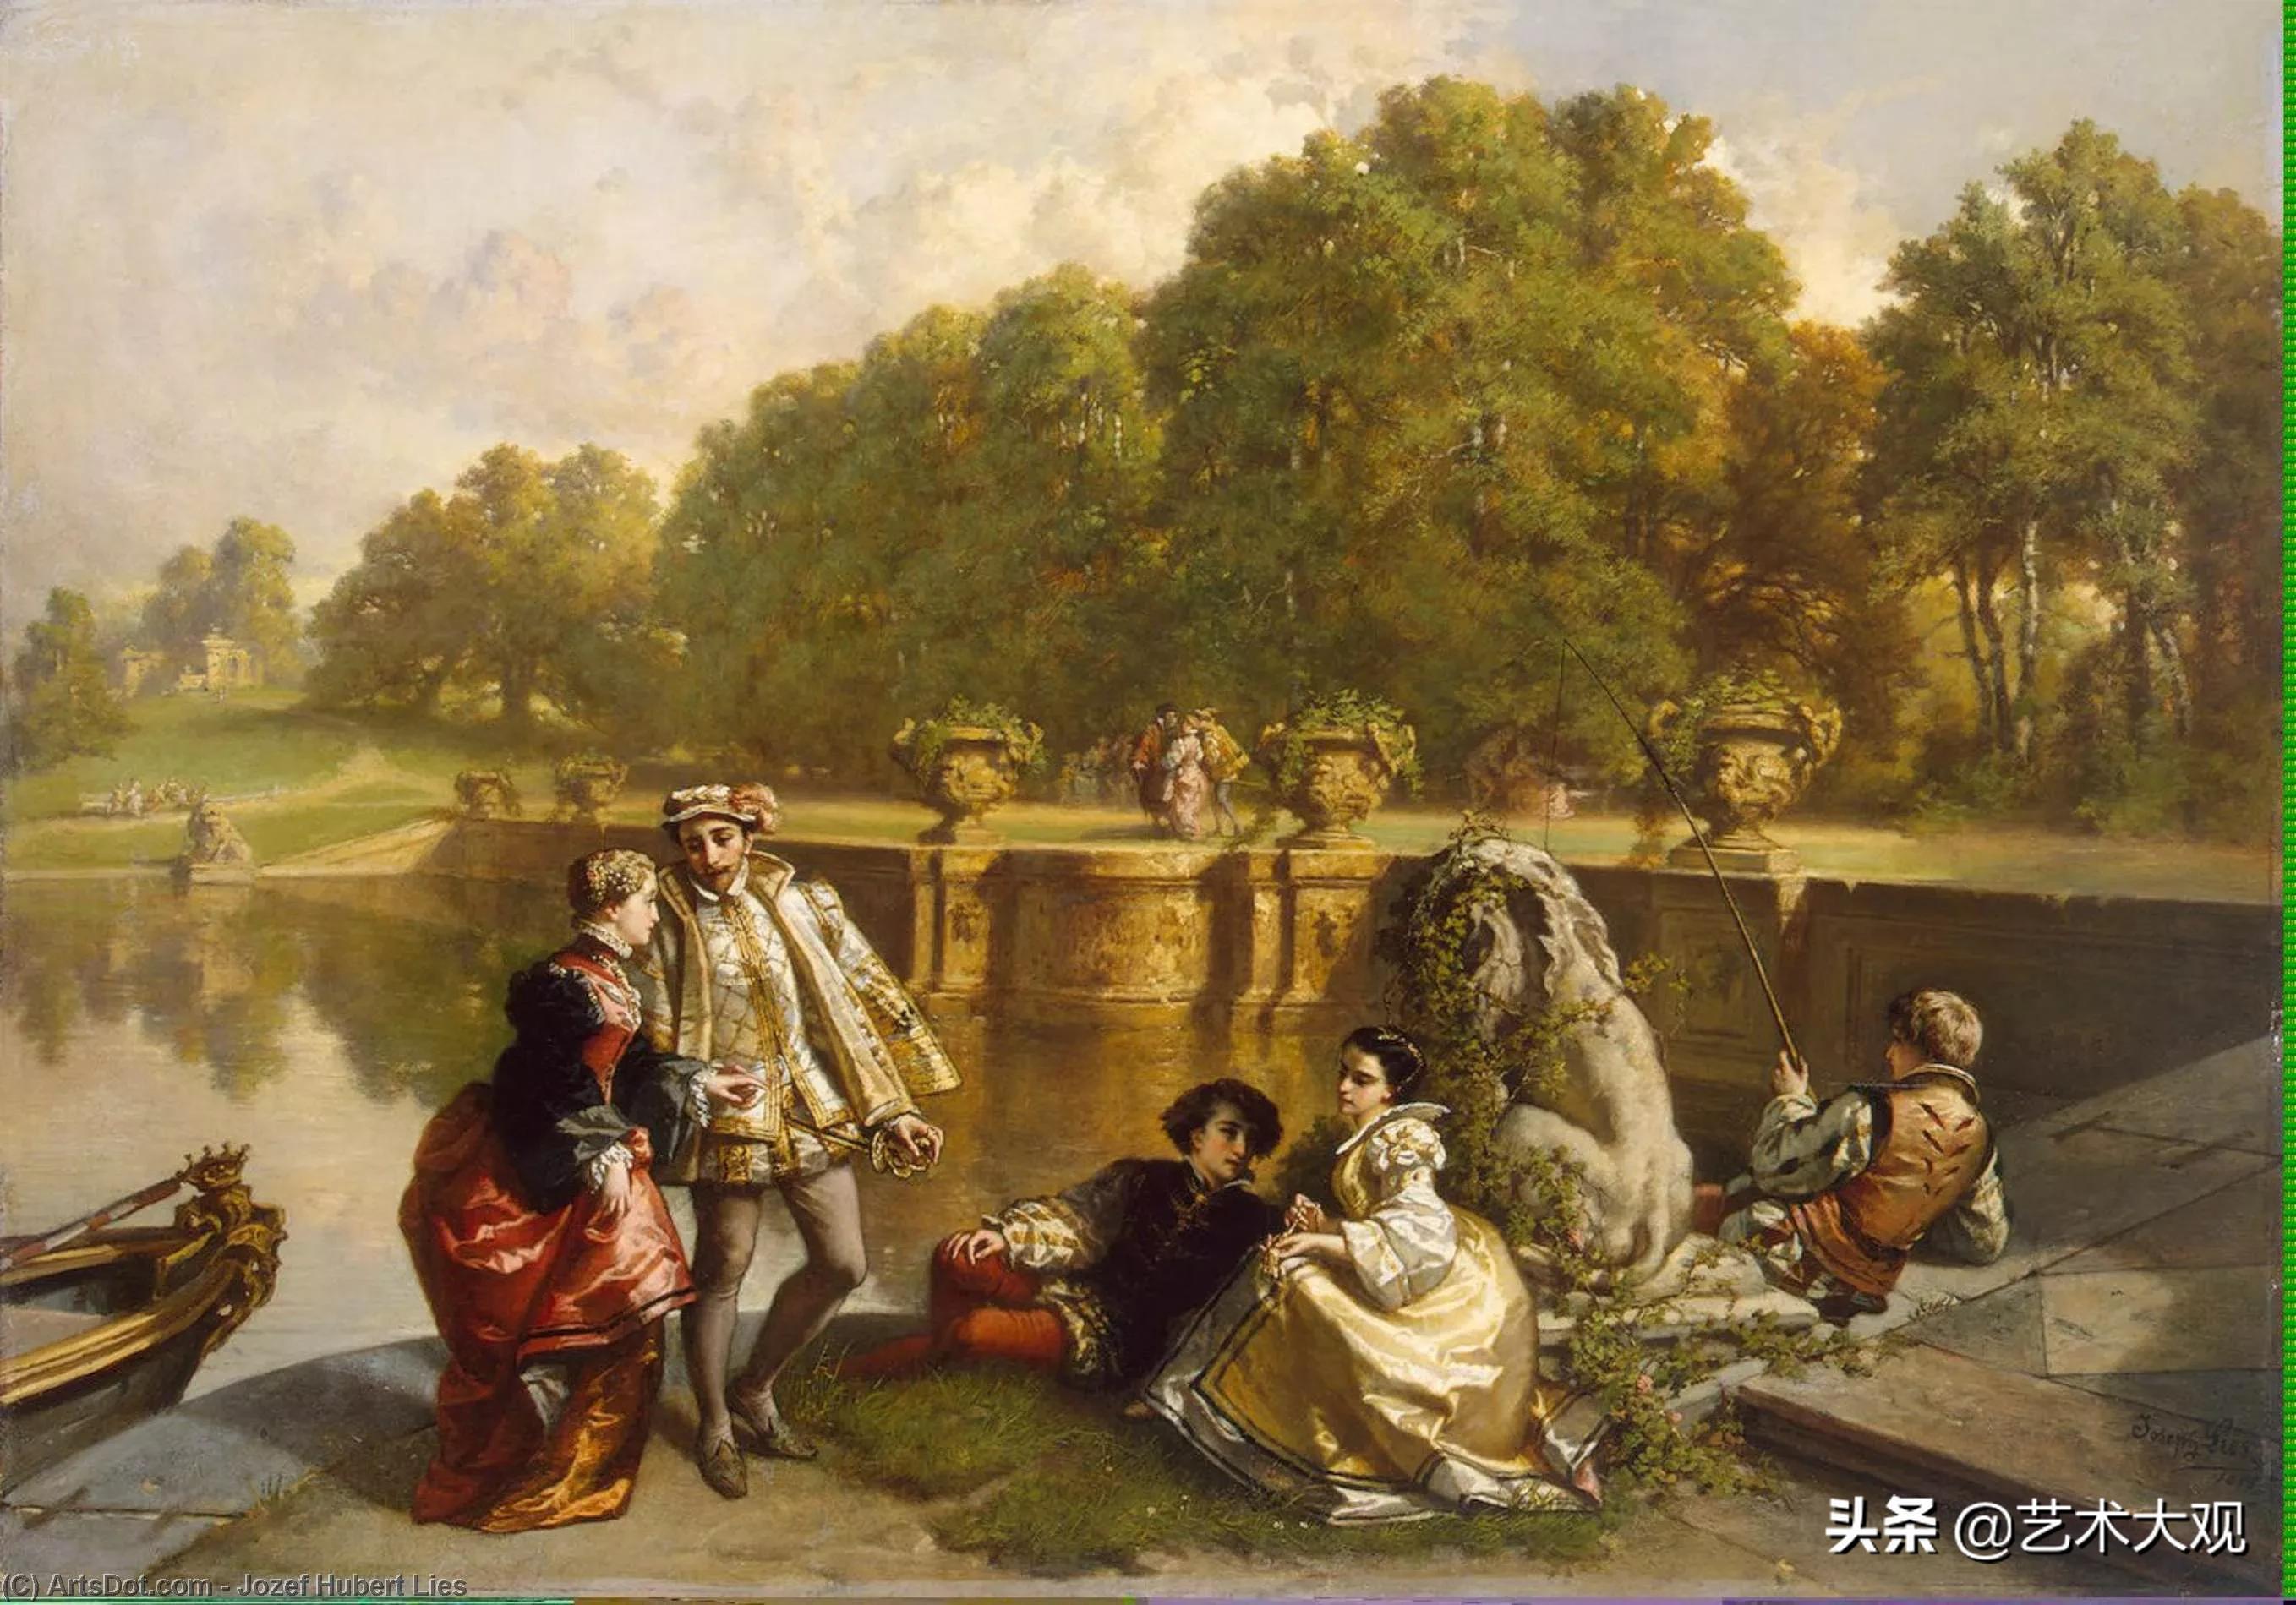 19世纪欧洲生活纪实绘画 | 德国艺术家萨伦廷油画作品欣赏